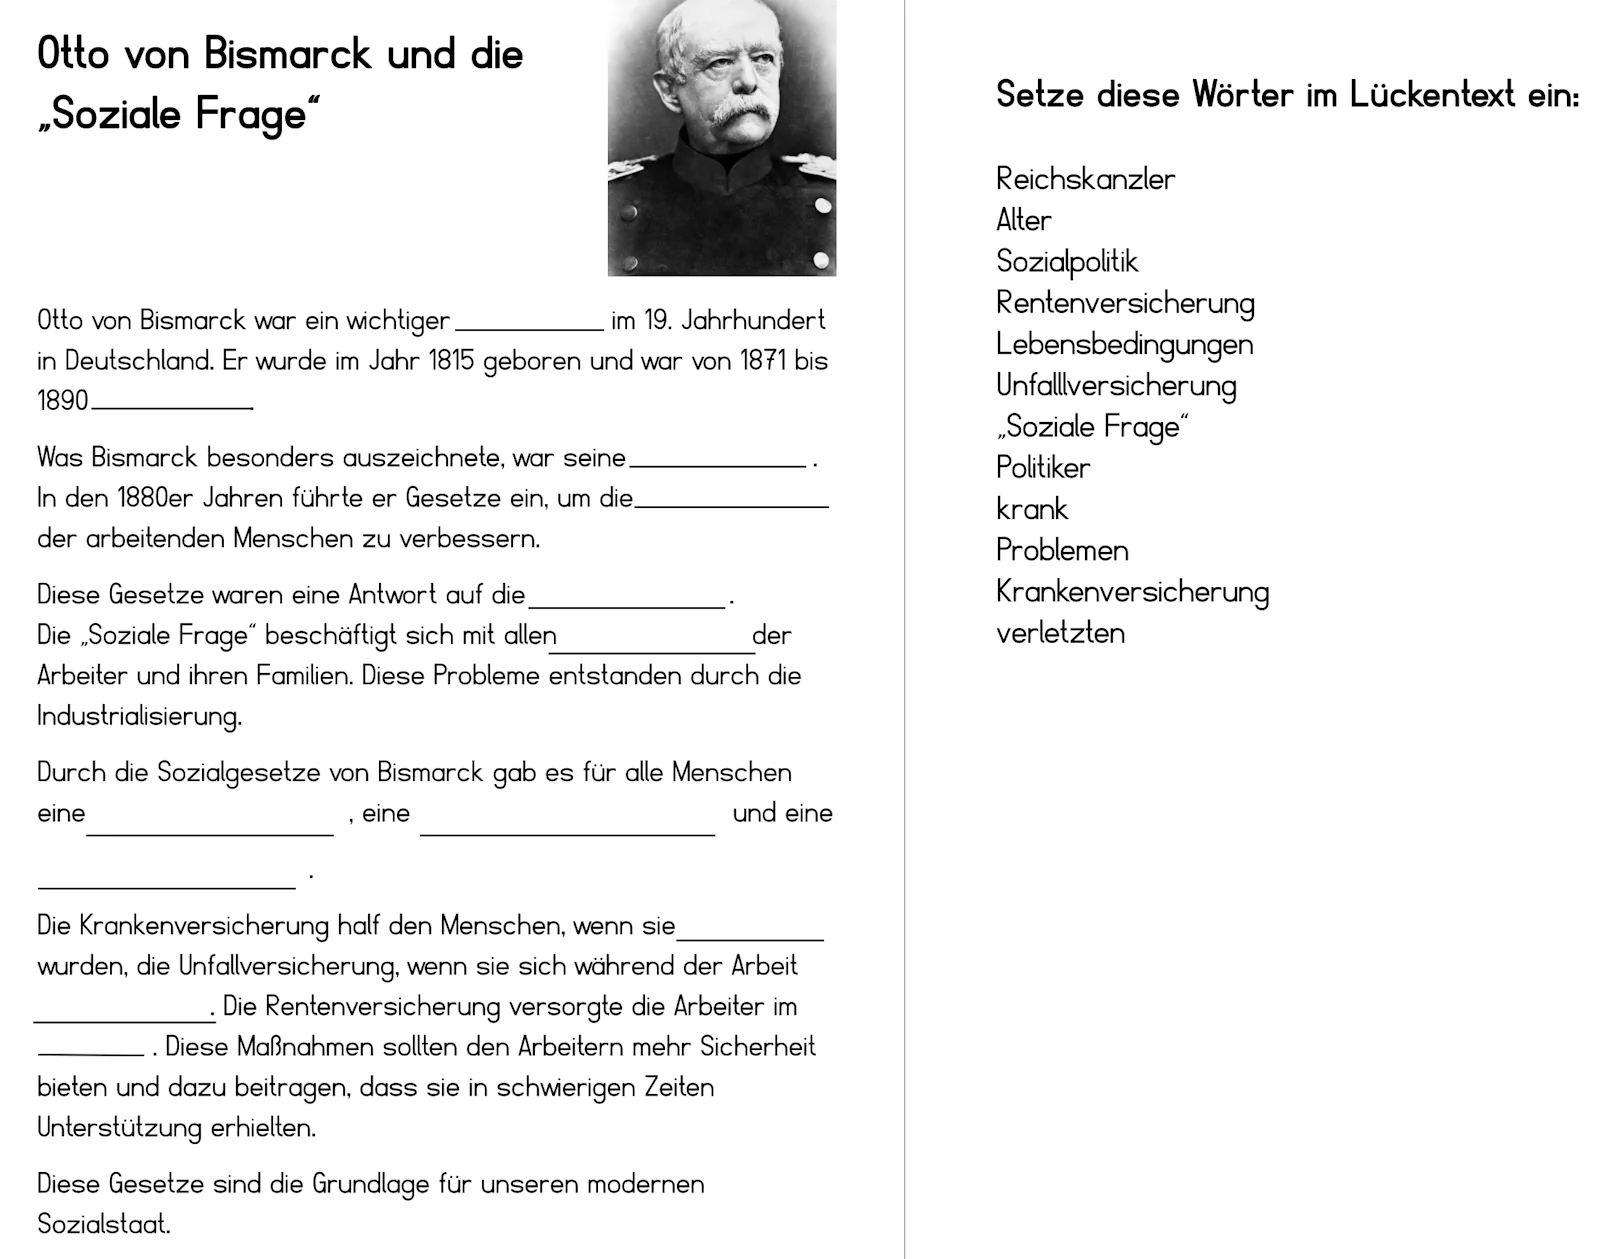 • Otto von Bismarck und die soziale Frage